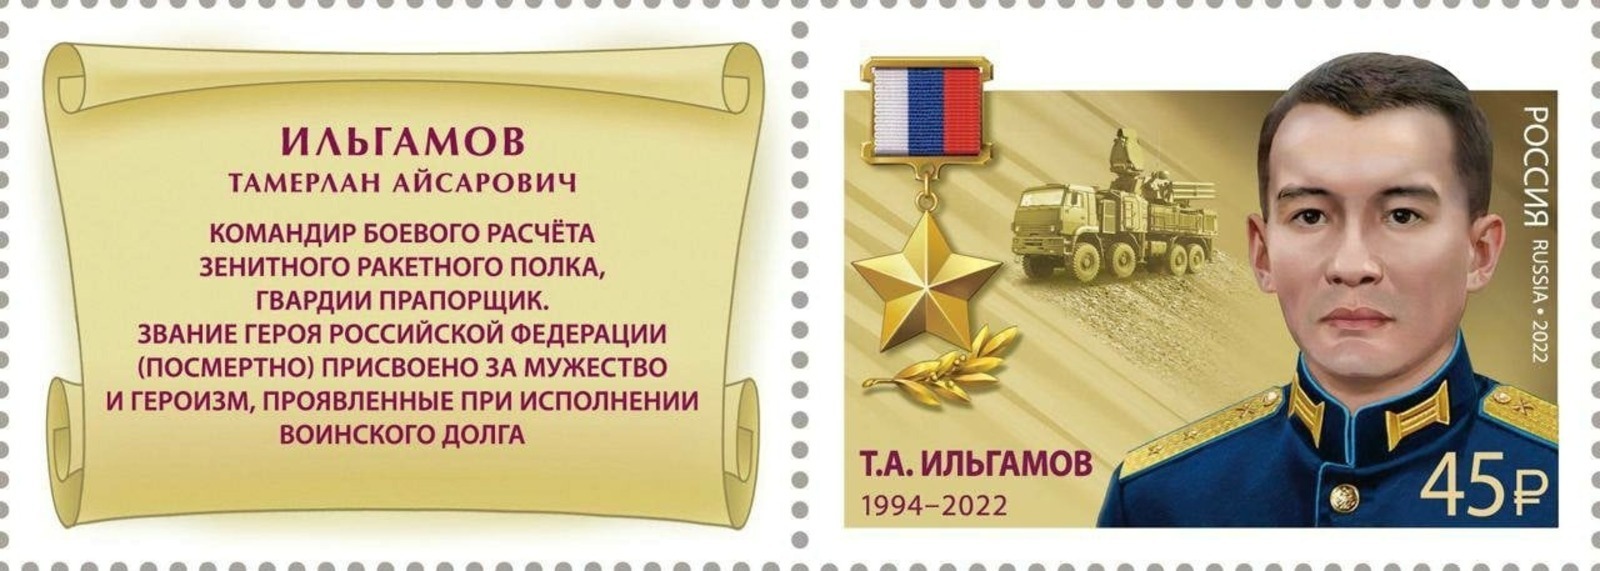 Имя Героя России Тамерлана Ильгамова из Башкирии увековечили на почтовой марке